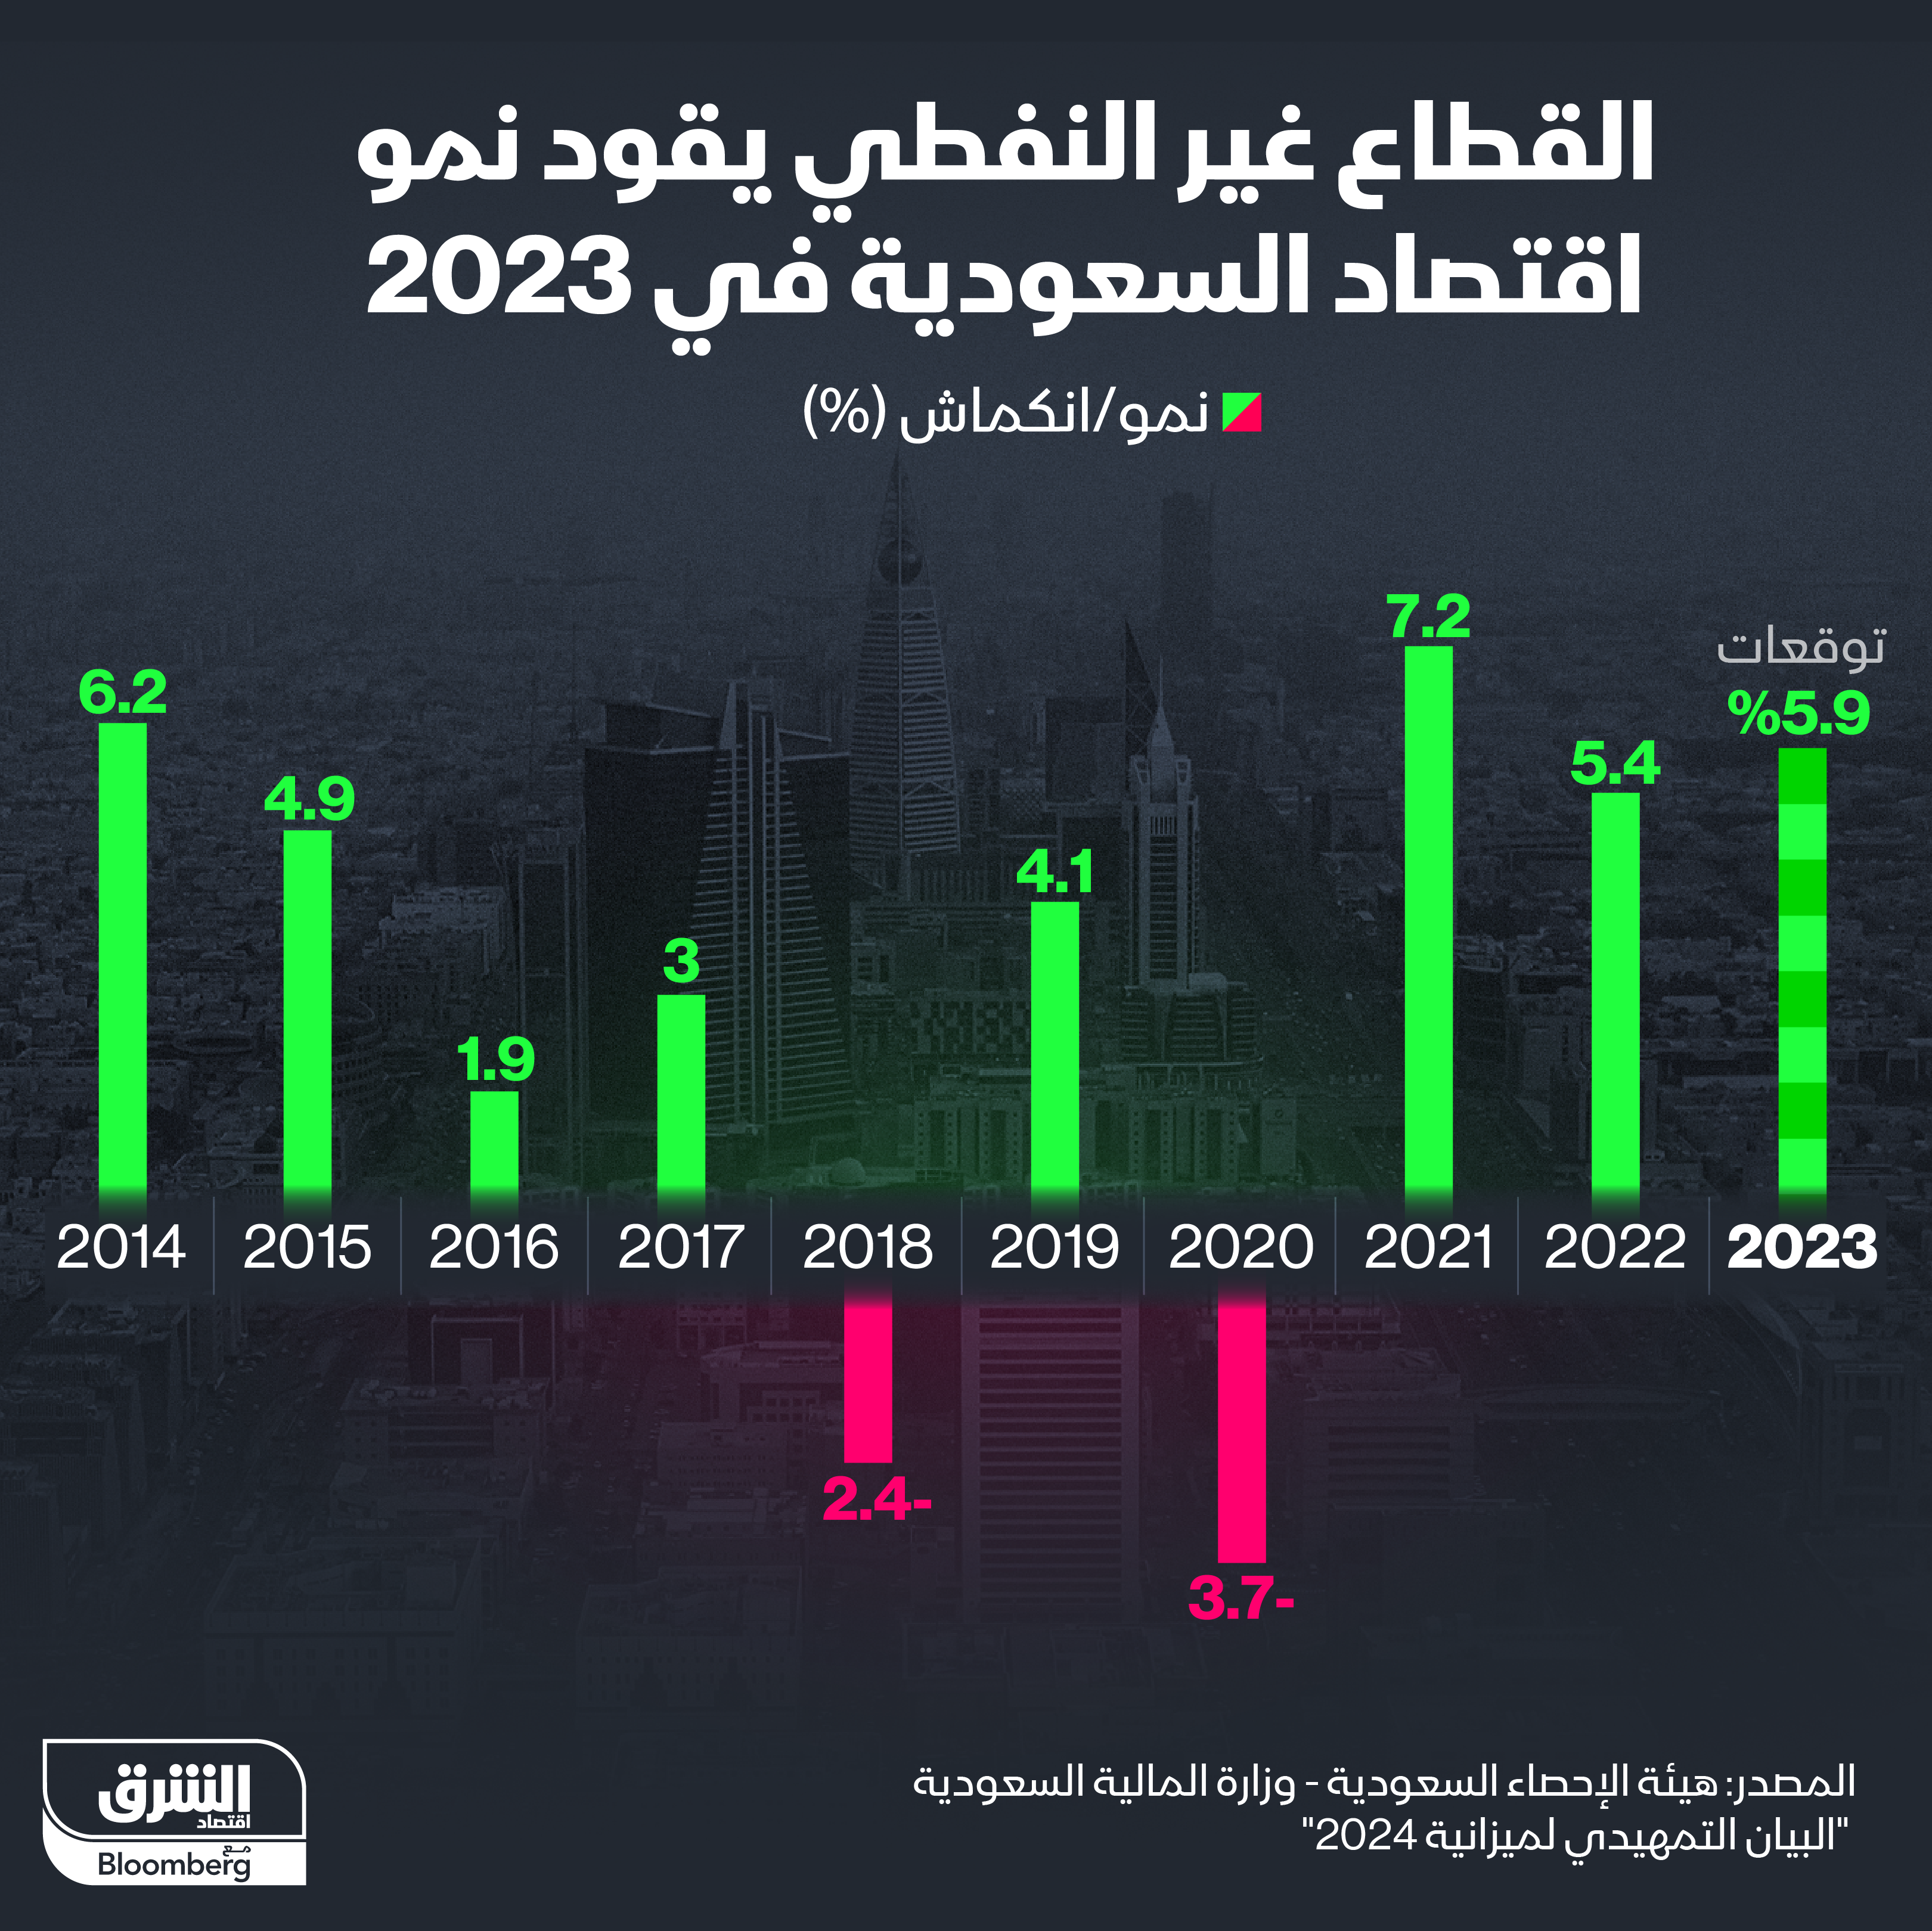 توقعات نمو القطاع غير النفطي في السعودية خلال 2023